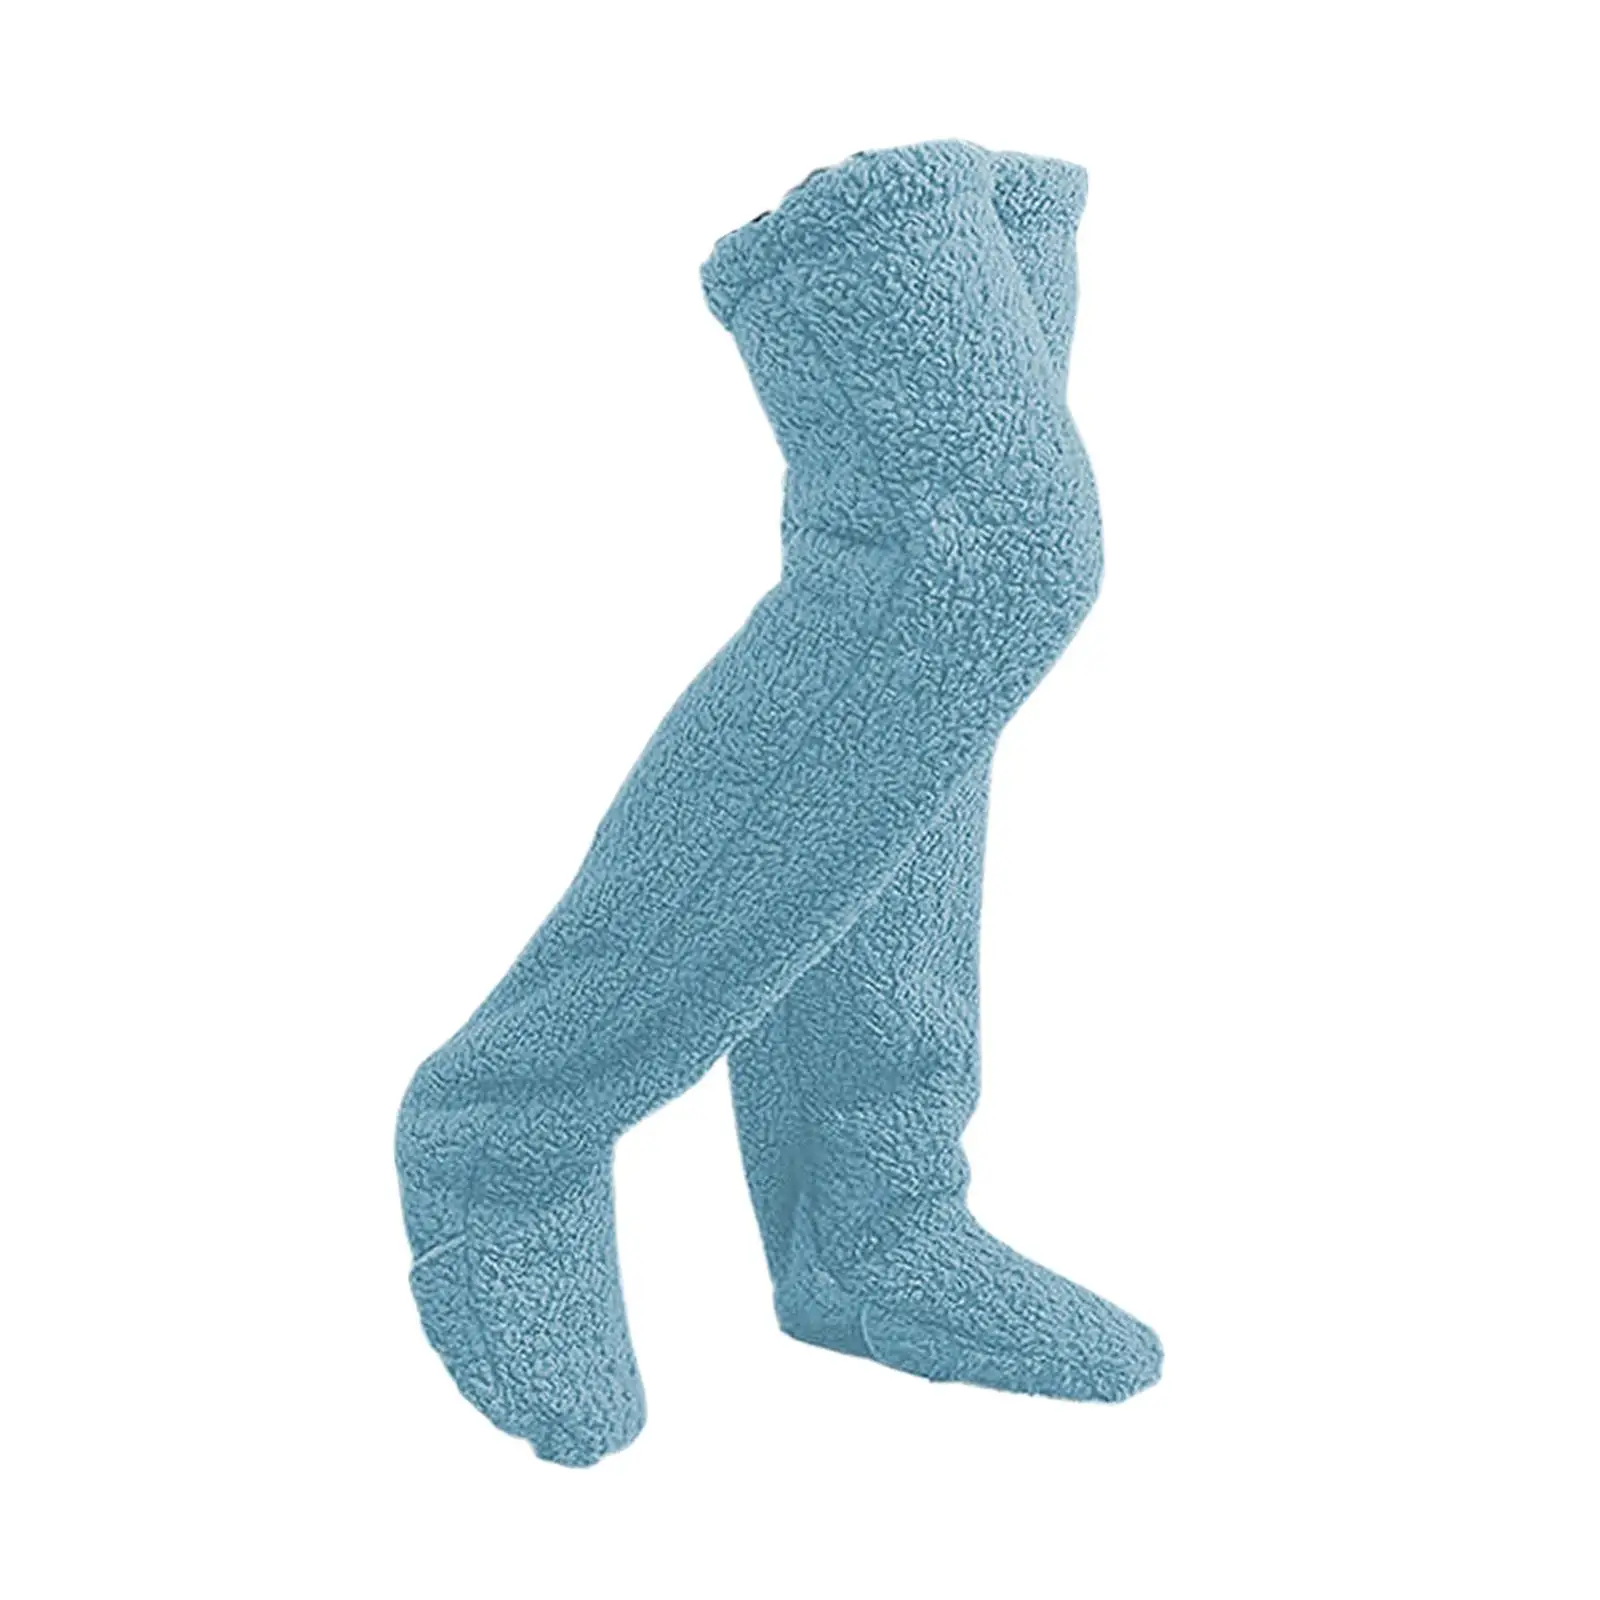 Thigh High Socks Boot Socks Warm Thick Long Stocking Plush Leg Warmers Slipper Stockings Over Knee Fuzzy Socks for Bedroom Dorm